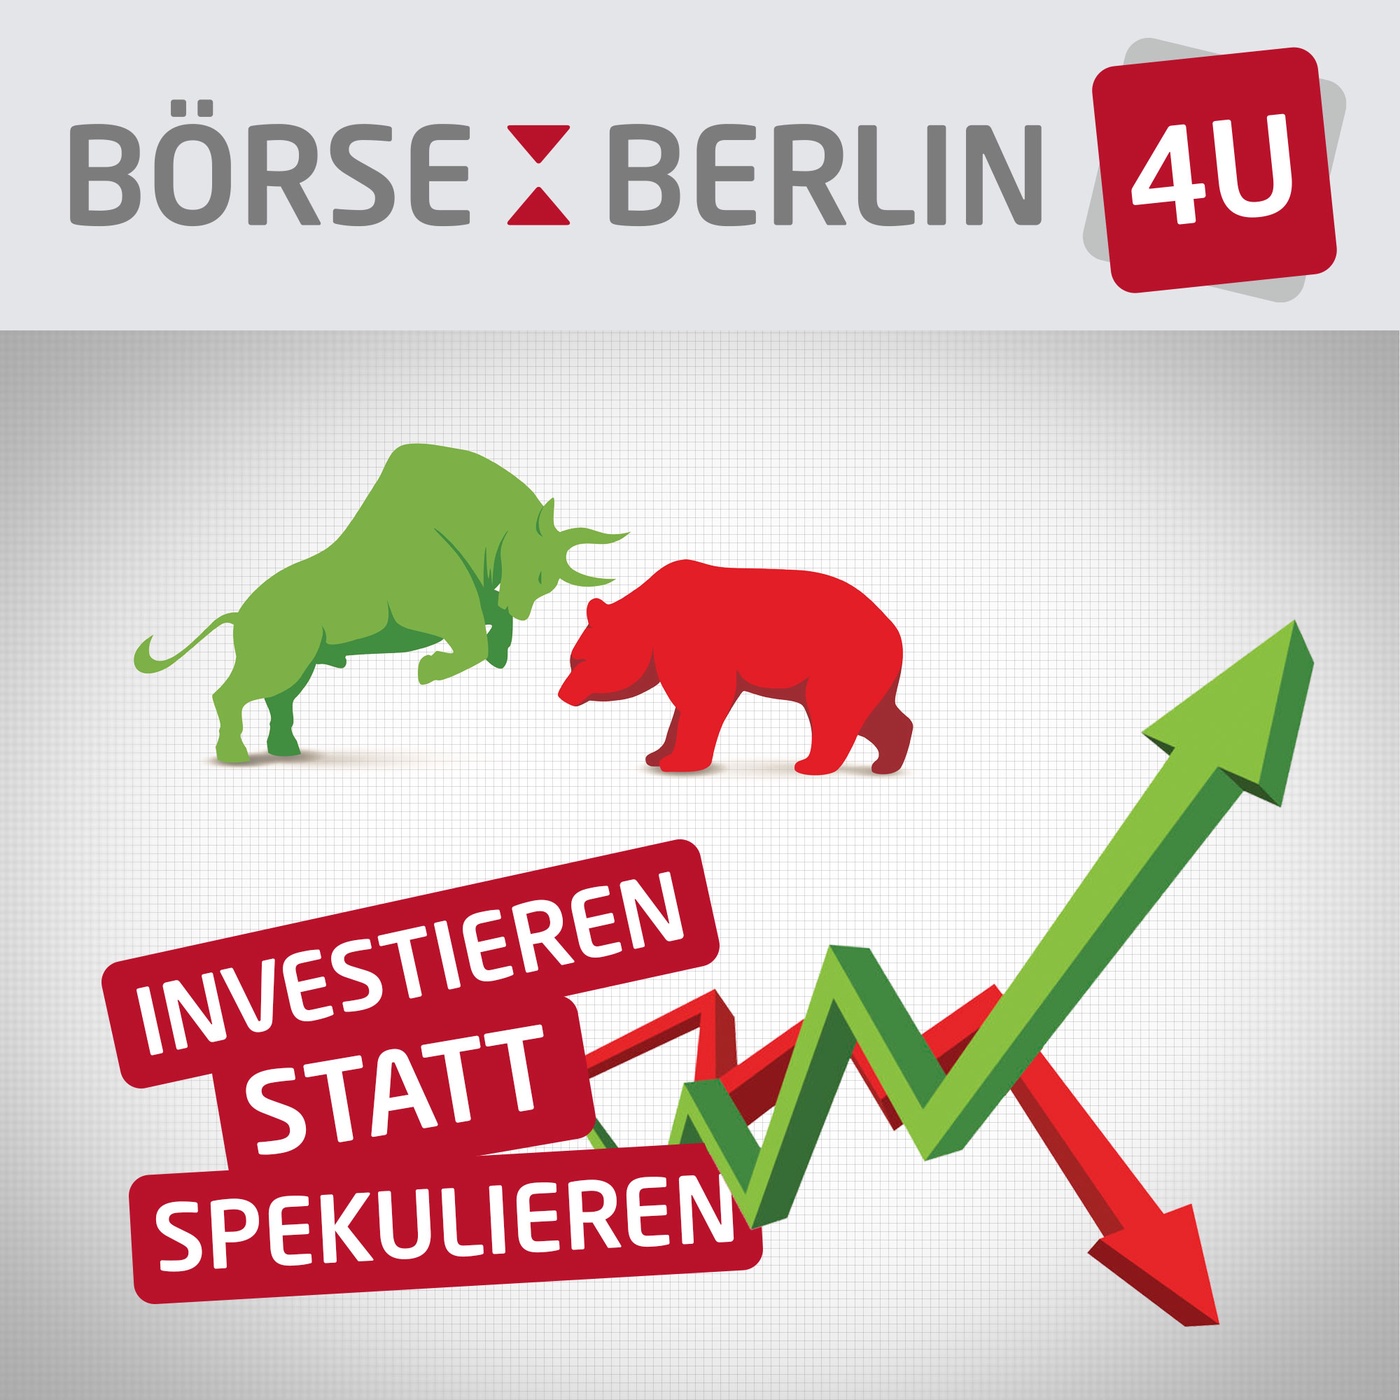 Börse Berlin 4U: 